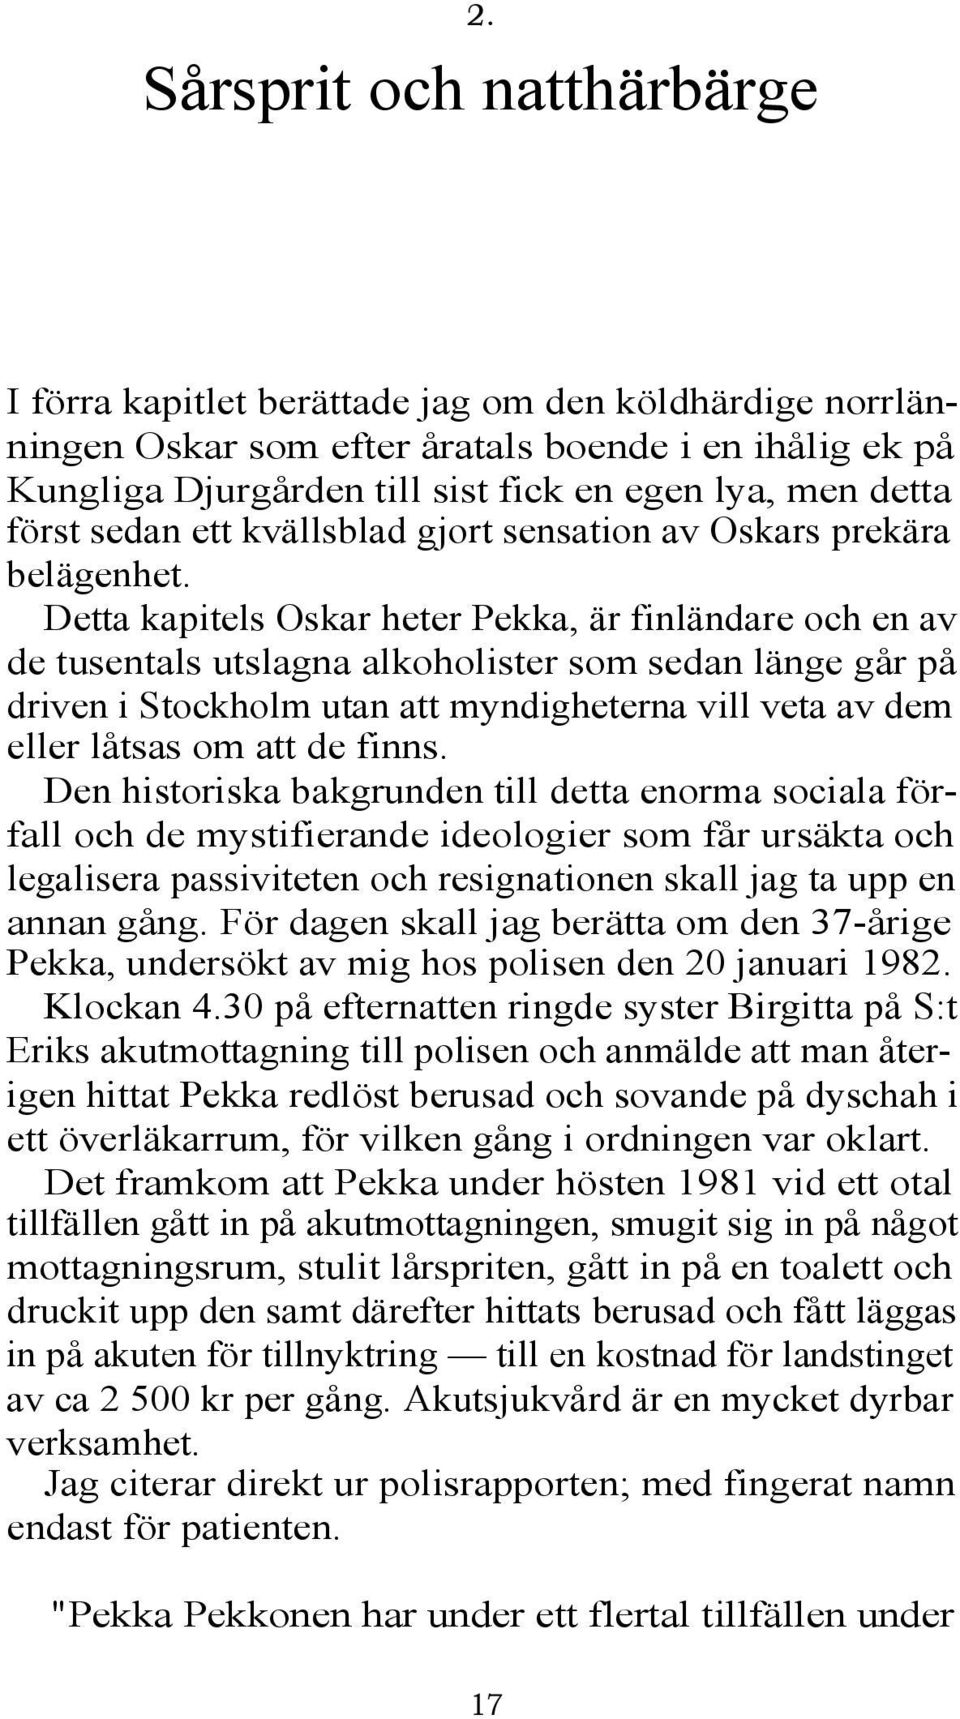 Detta kapitels Oskar heter Pekka, är finländare och en av de tusentals utslagna alkoholister som sedan länge går på driven i Stockholm utan att myndigheterna vill veta av dem eller låtsas om att de